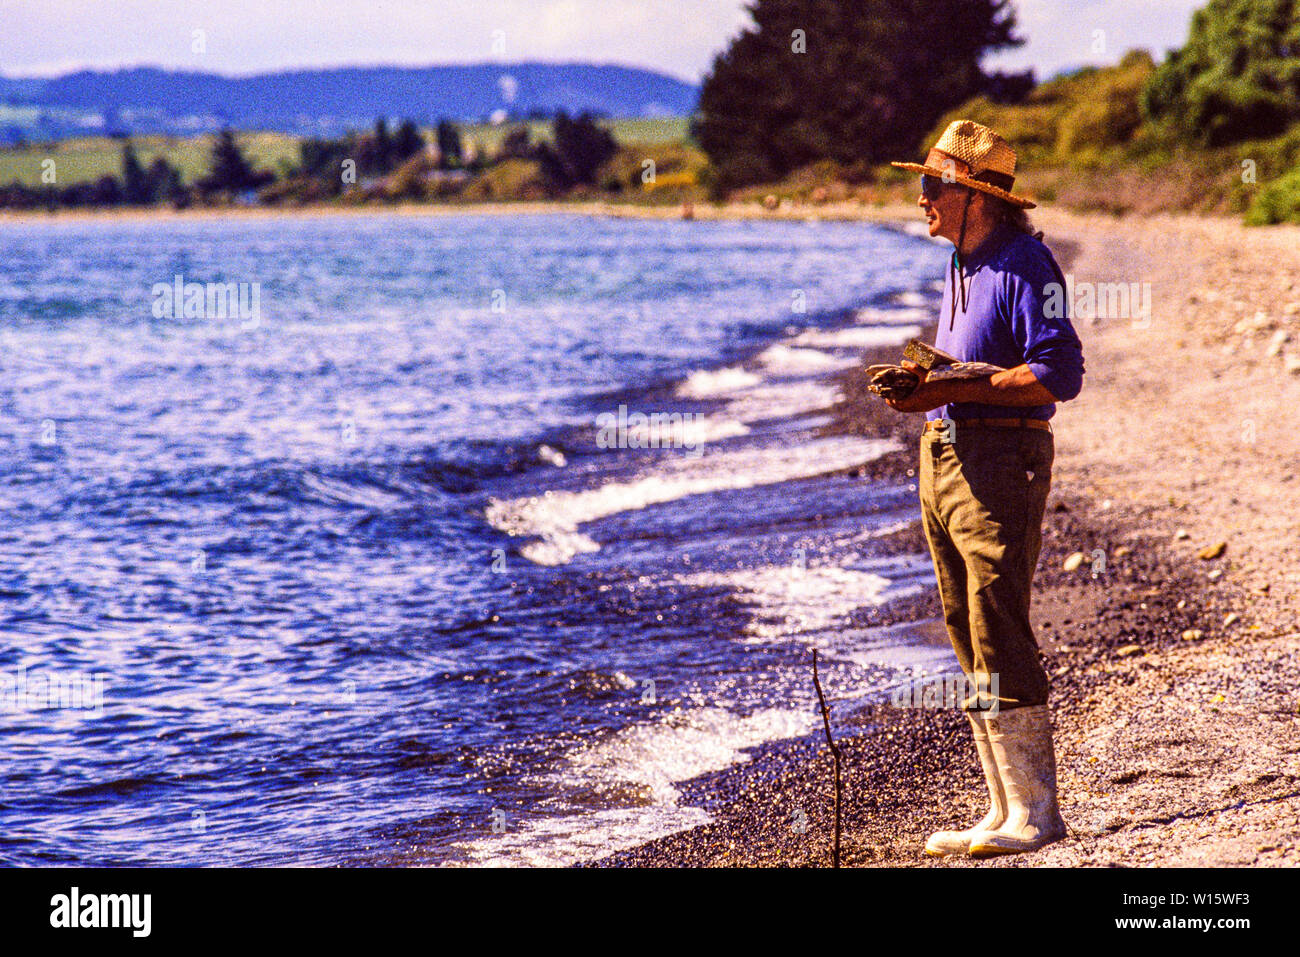 Neuseeland, Nordinsel. Männer angeln im See Taupo, einem bekannten Forellen Fischerei mit Aktien von Braun eingeführt und Regenbogenforelle. Foto November 19. Stockfoto